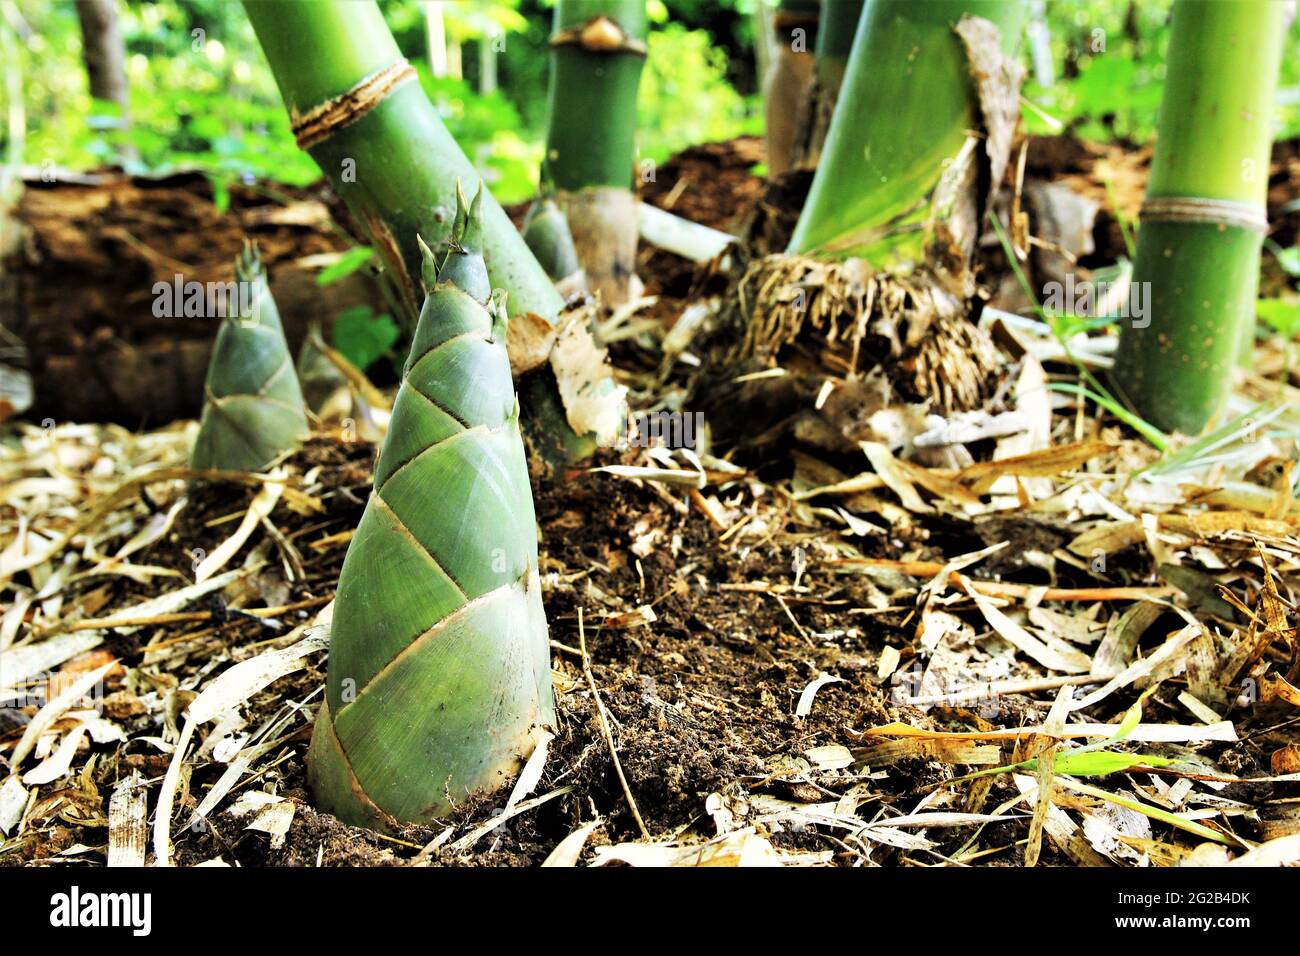 bamboo shoots. stock photo Stock Photo